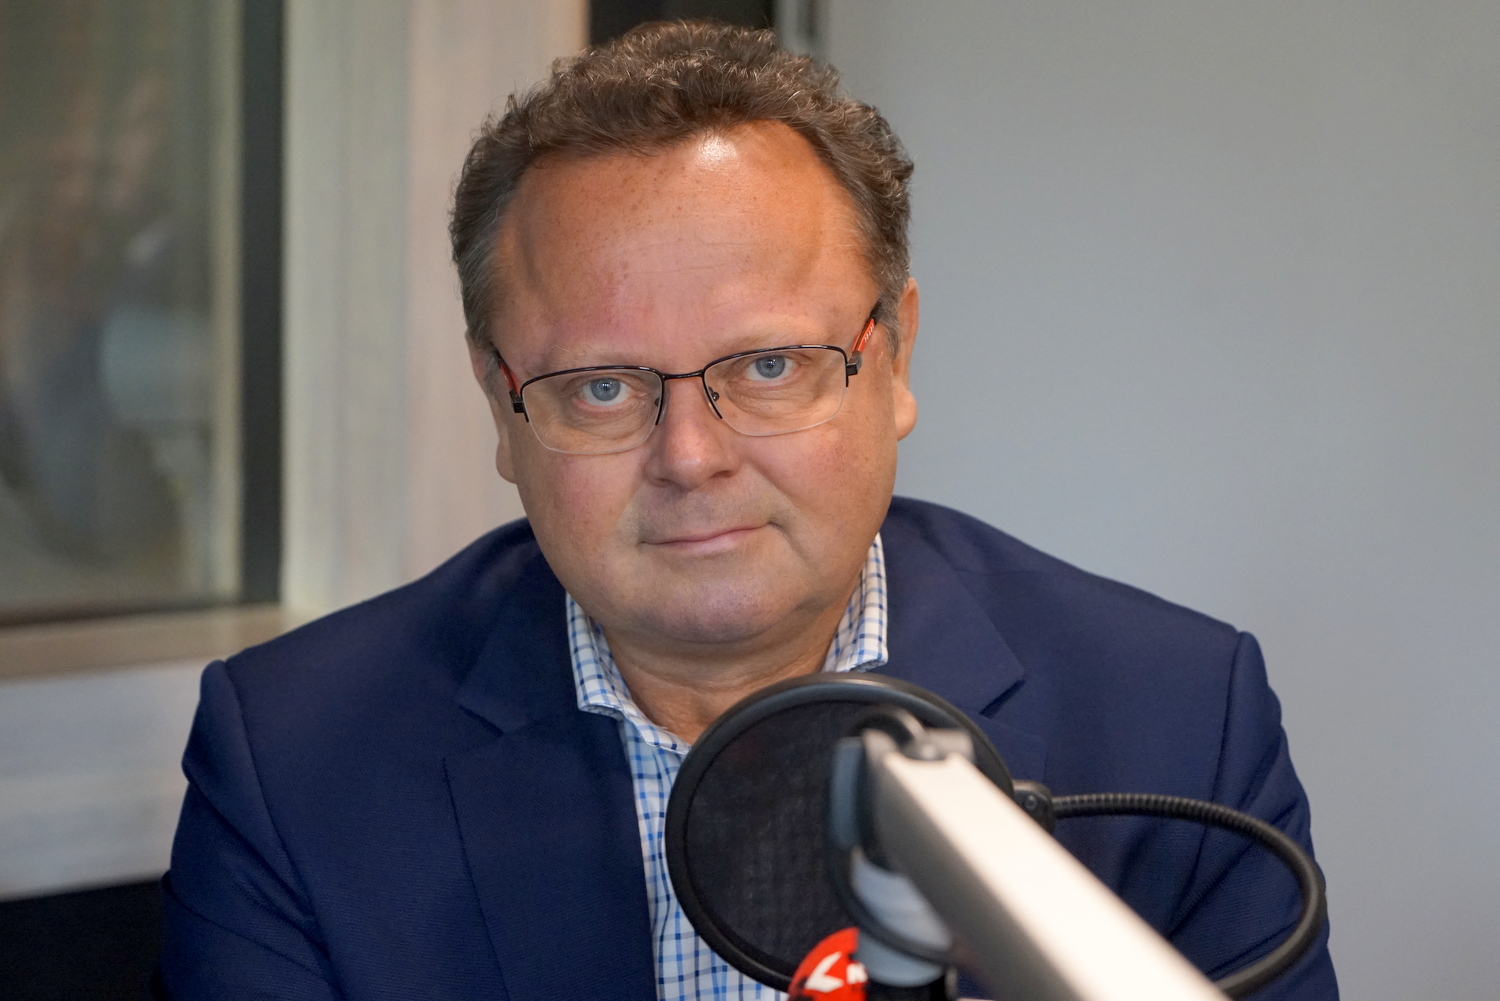 Andrzej Szejna: nie ma szans na wspólną listę partii opozycyjnych